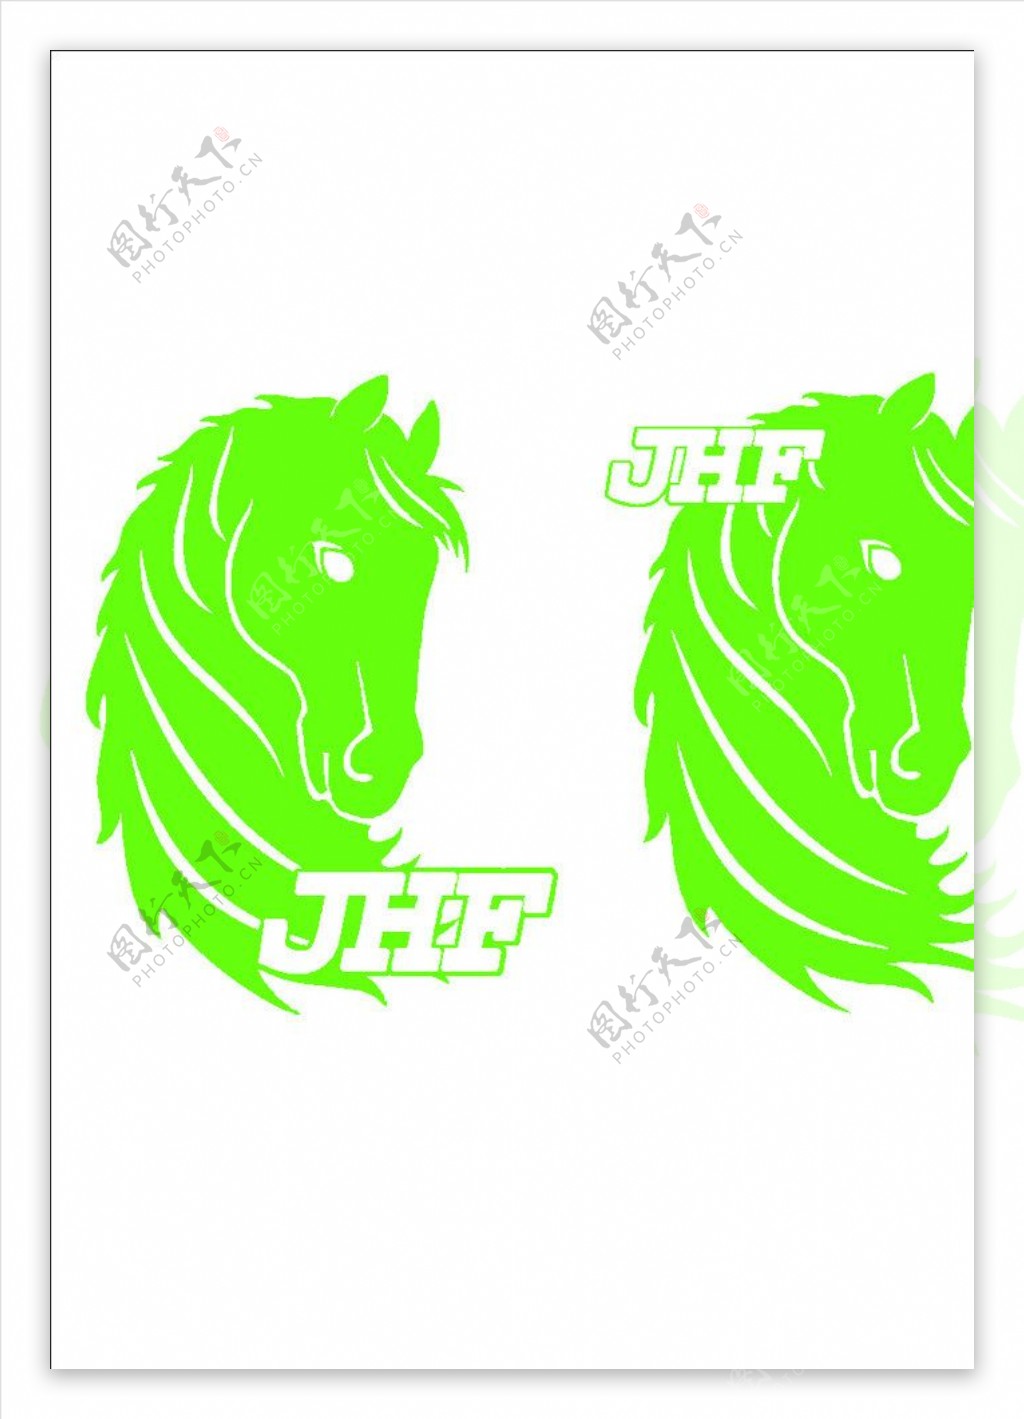 JHF马头标志图片